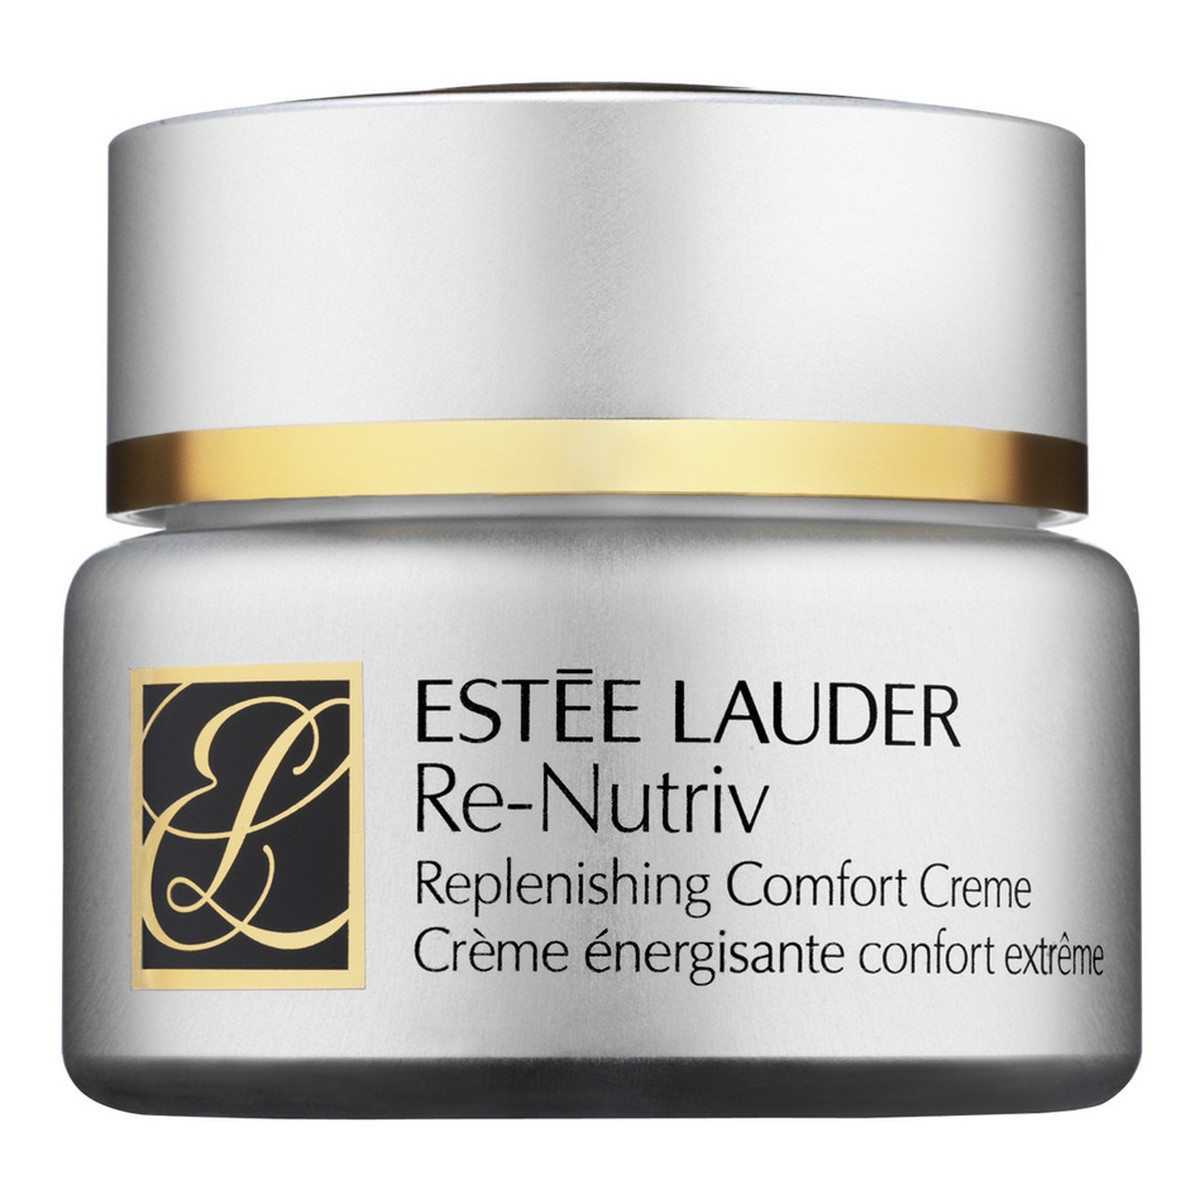 Estee Lauder Re-Nutriv Replenishing Comfort Creme Głęboko nawilżający krem przeciwstarzeniowy 50ml